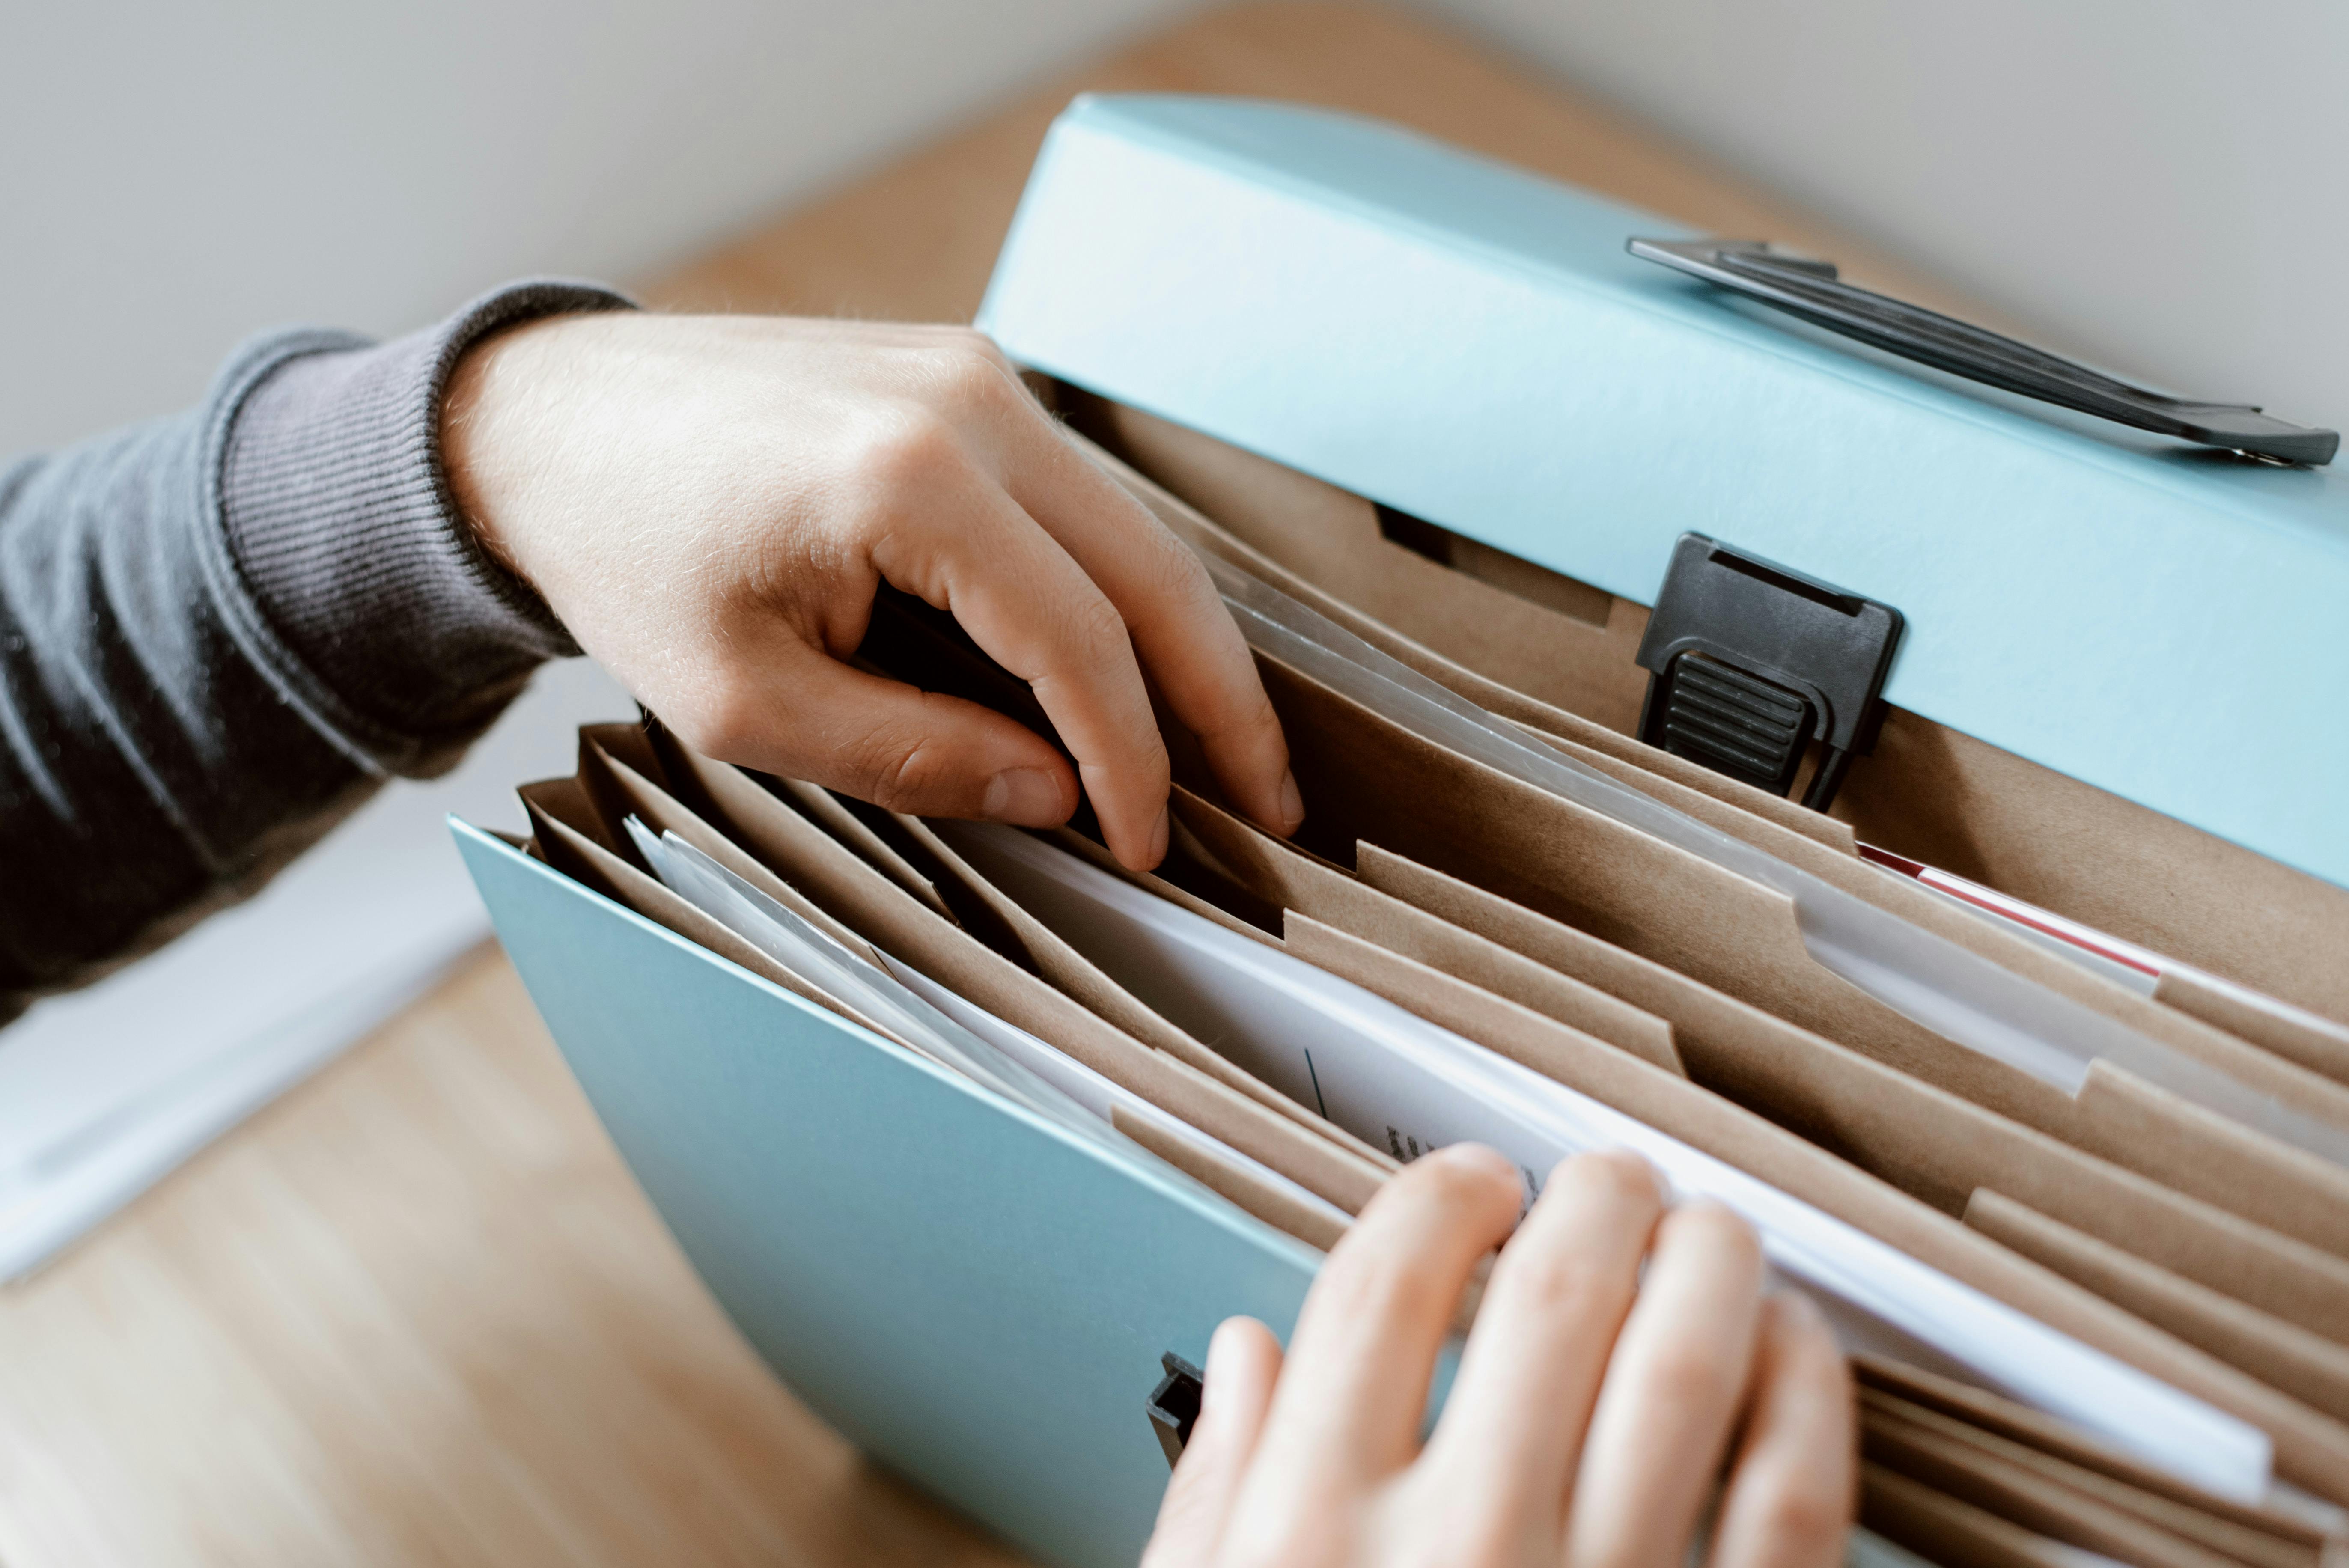 Une personne organise des documents dans une boîte d'archives, dépeignant les tâches administratives quotidiennes dans un bureau.